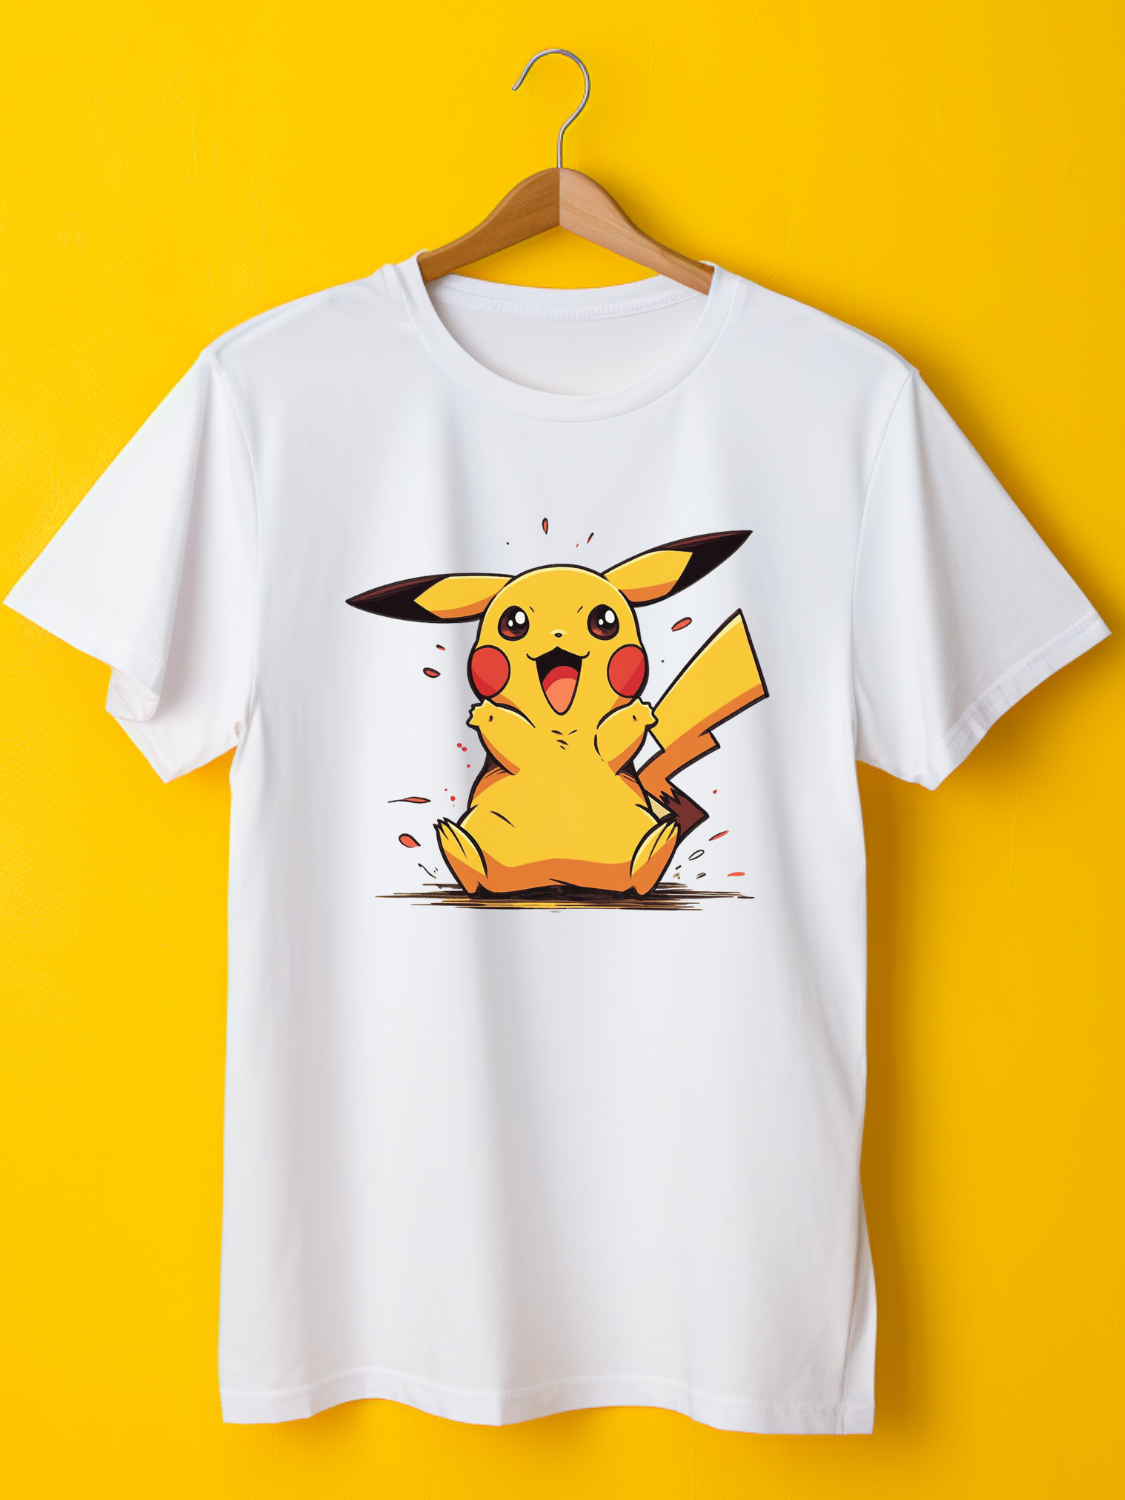 Pikachu Printed T-Shirt 57